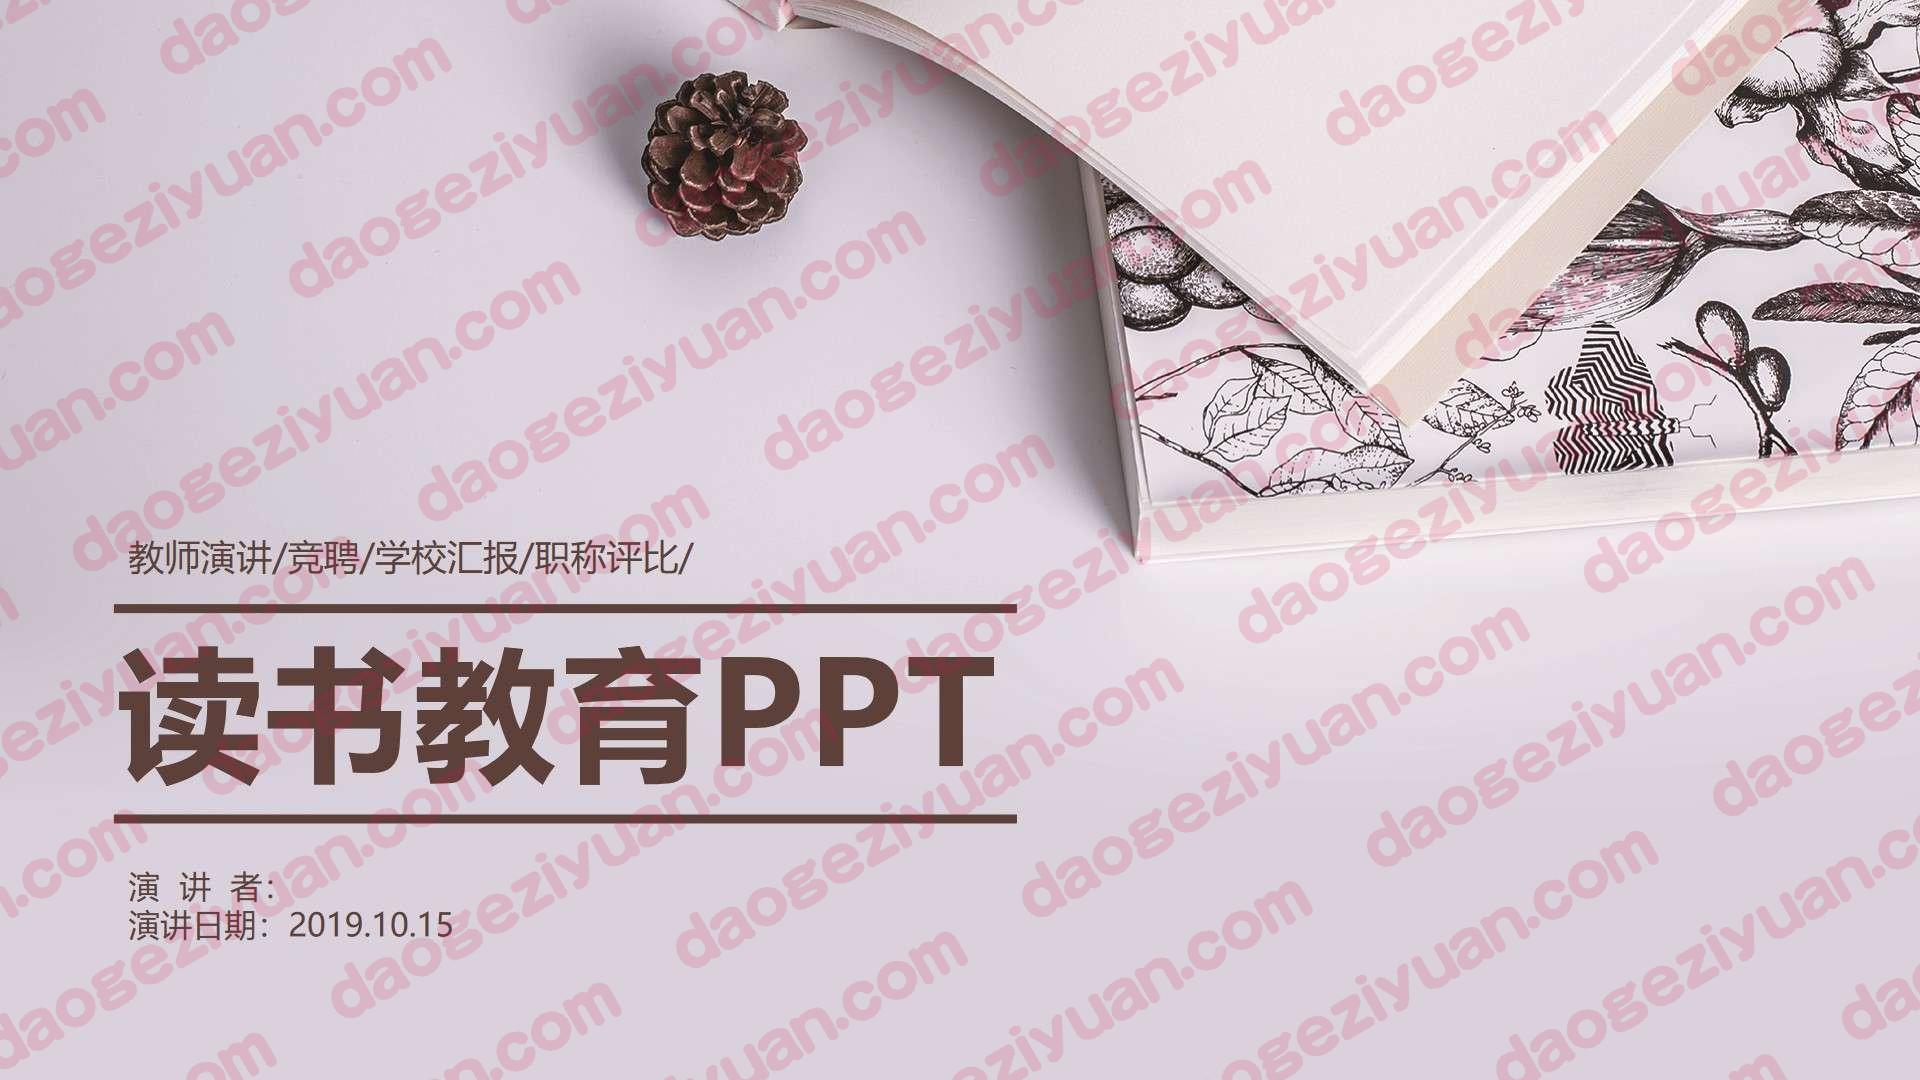 教育说课教育说课(227).pptx